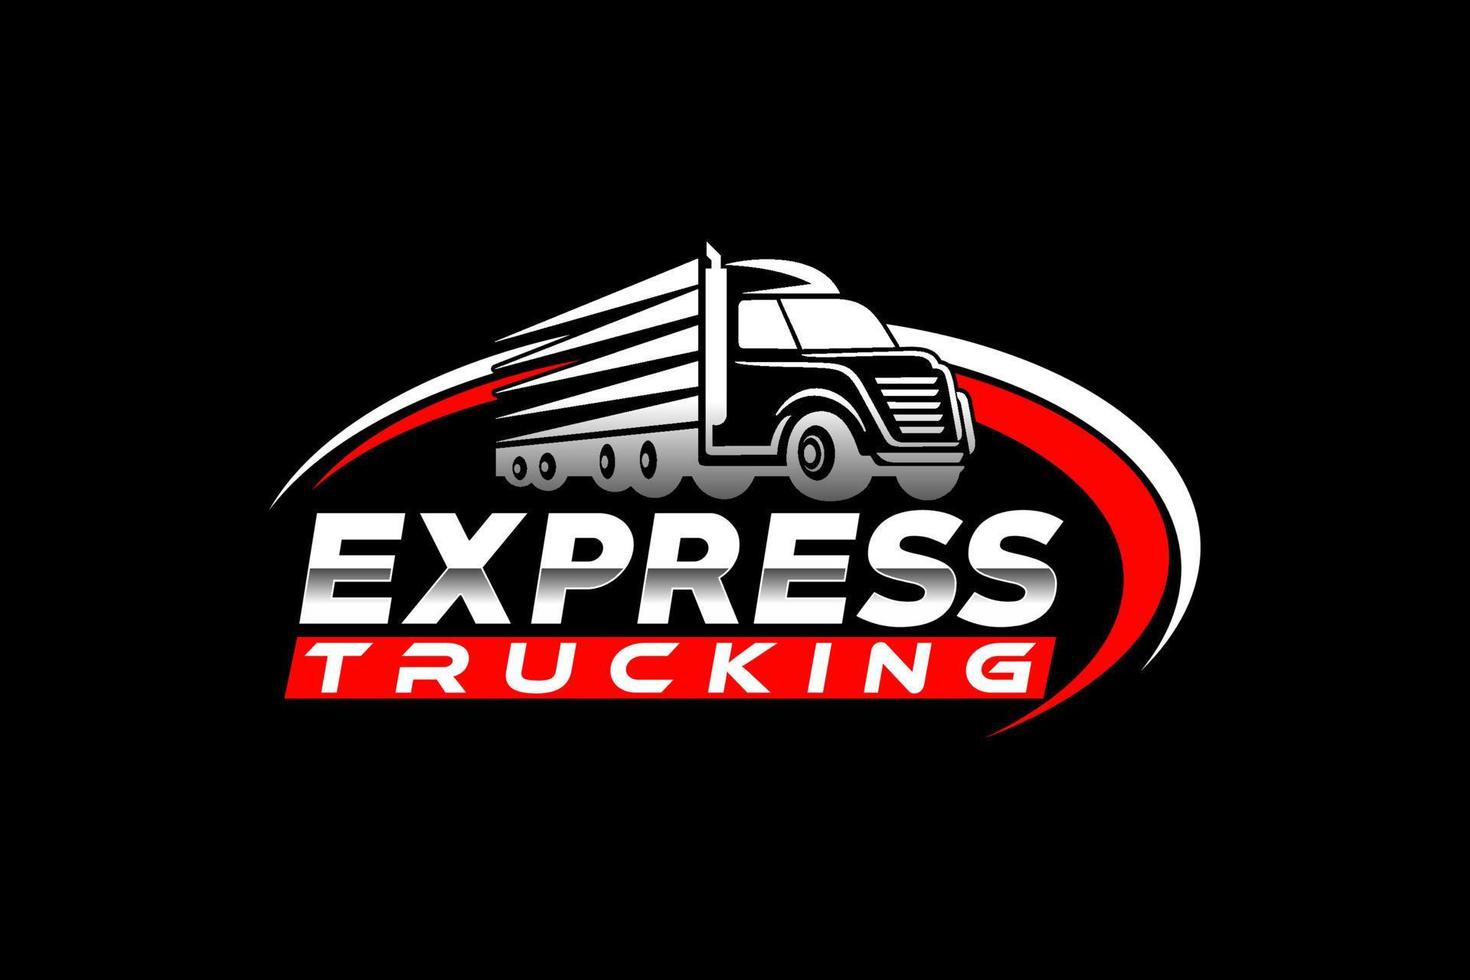 vettore del modello di logo astratto della siluetta del camion. adatto per il logo del carico, camion del carico di consegna, logo logistico